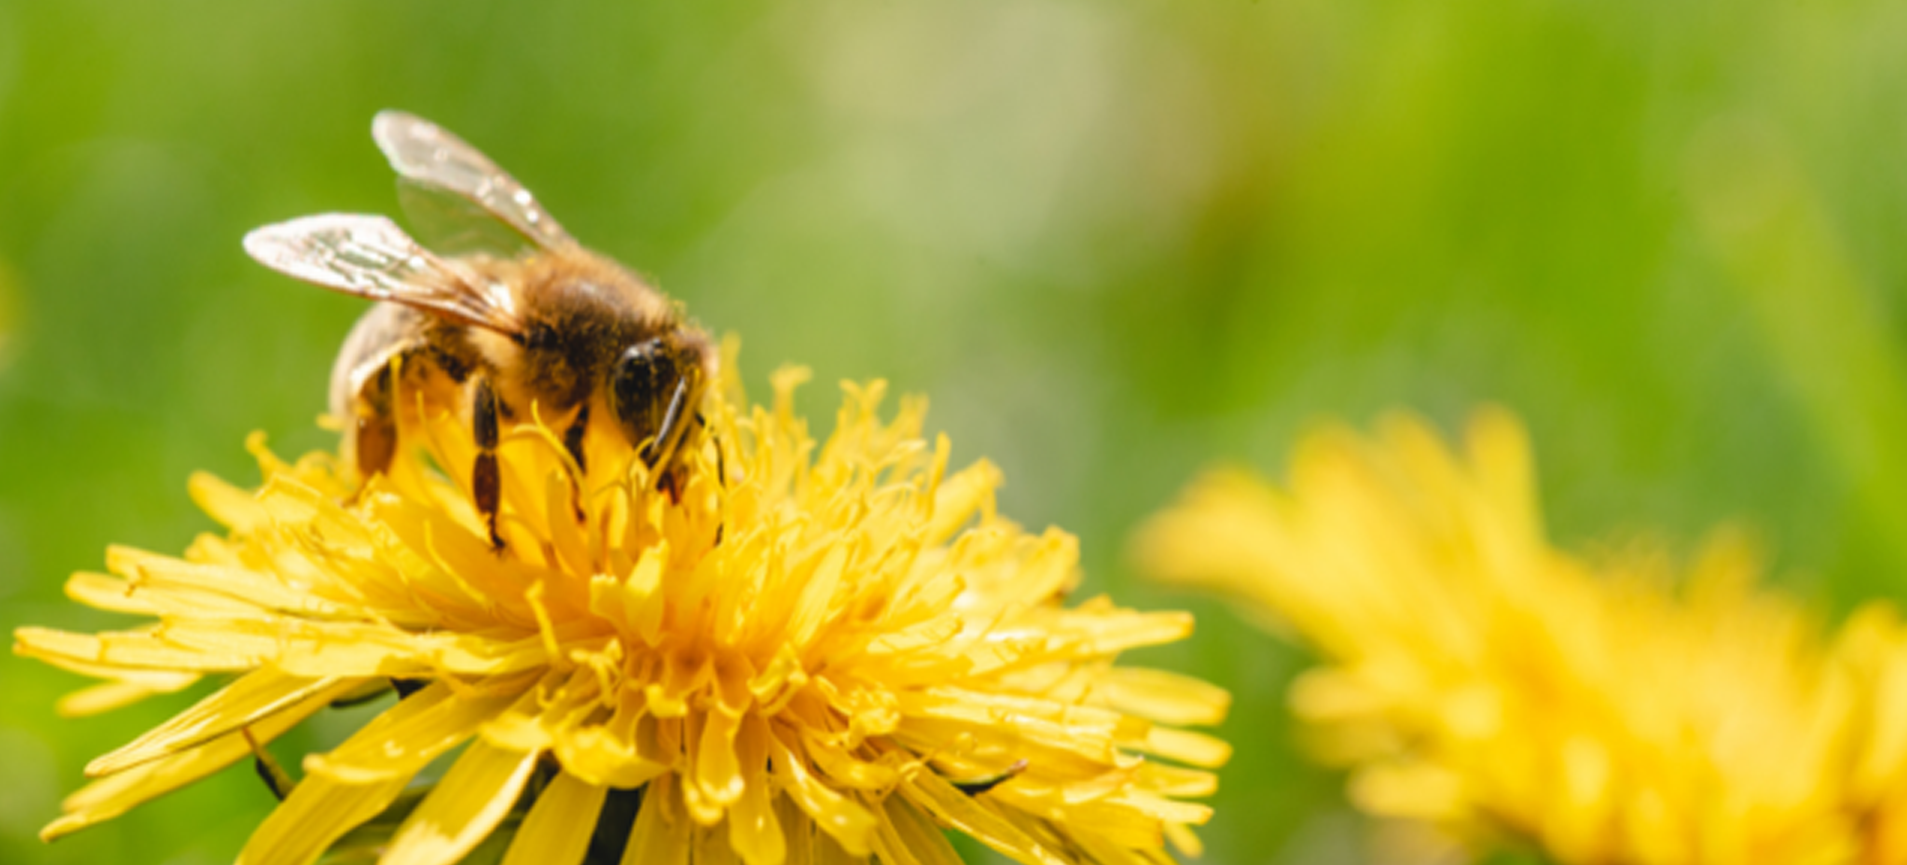 How do bees make honey